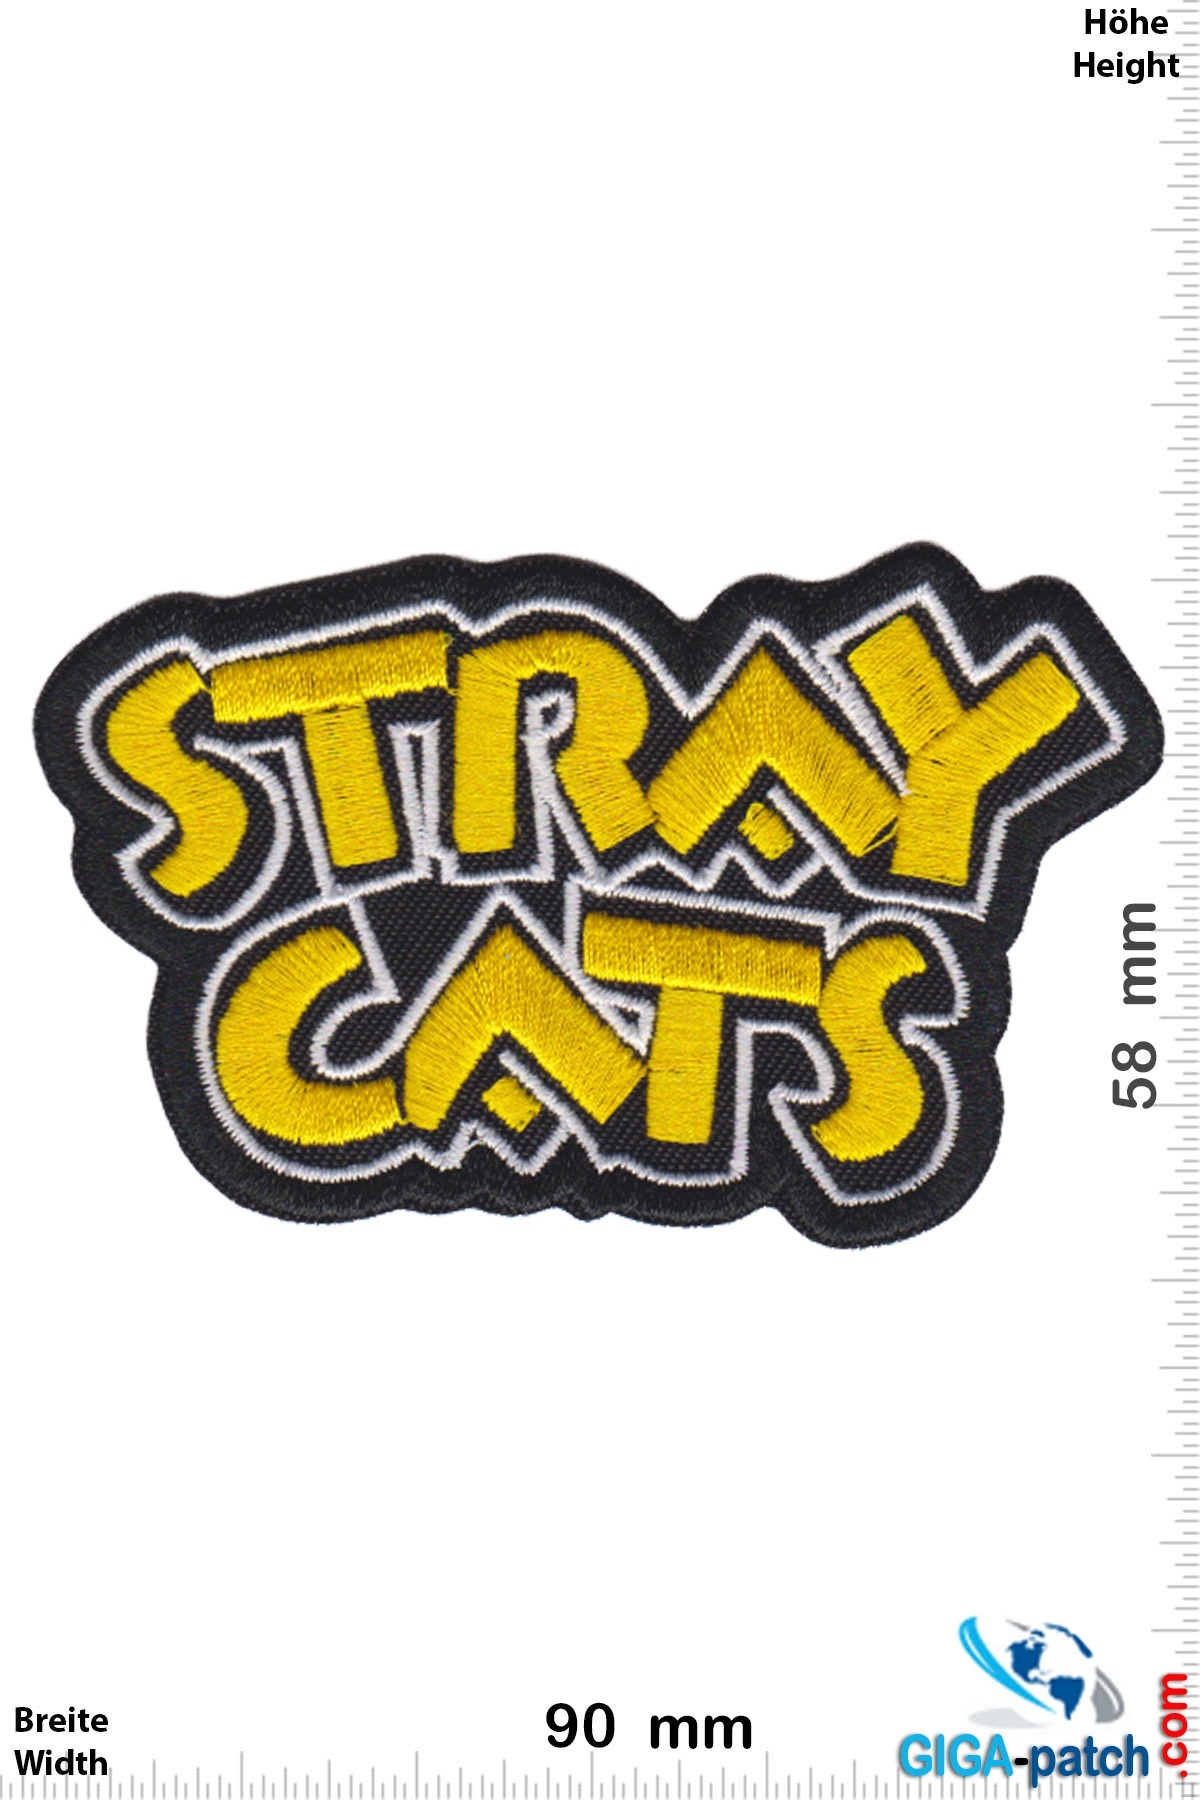 Stray Cats Stray Cats -  Rockabilly Rebels